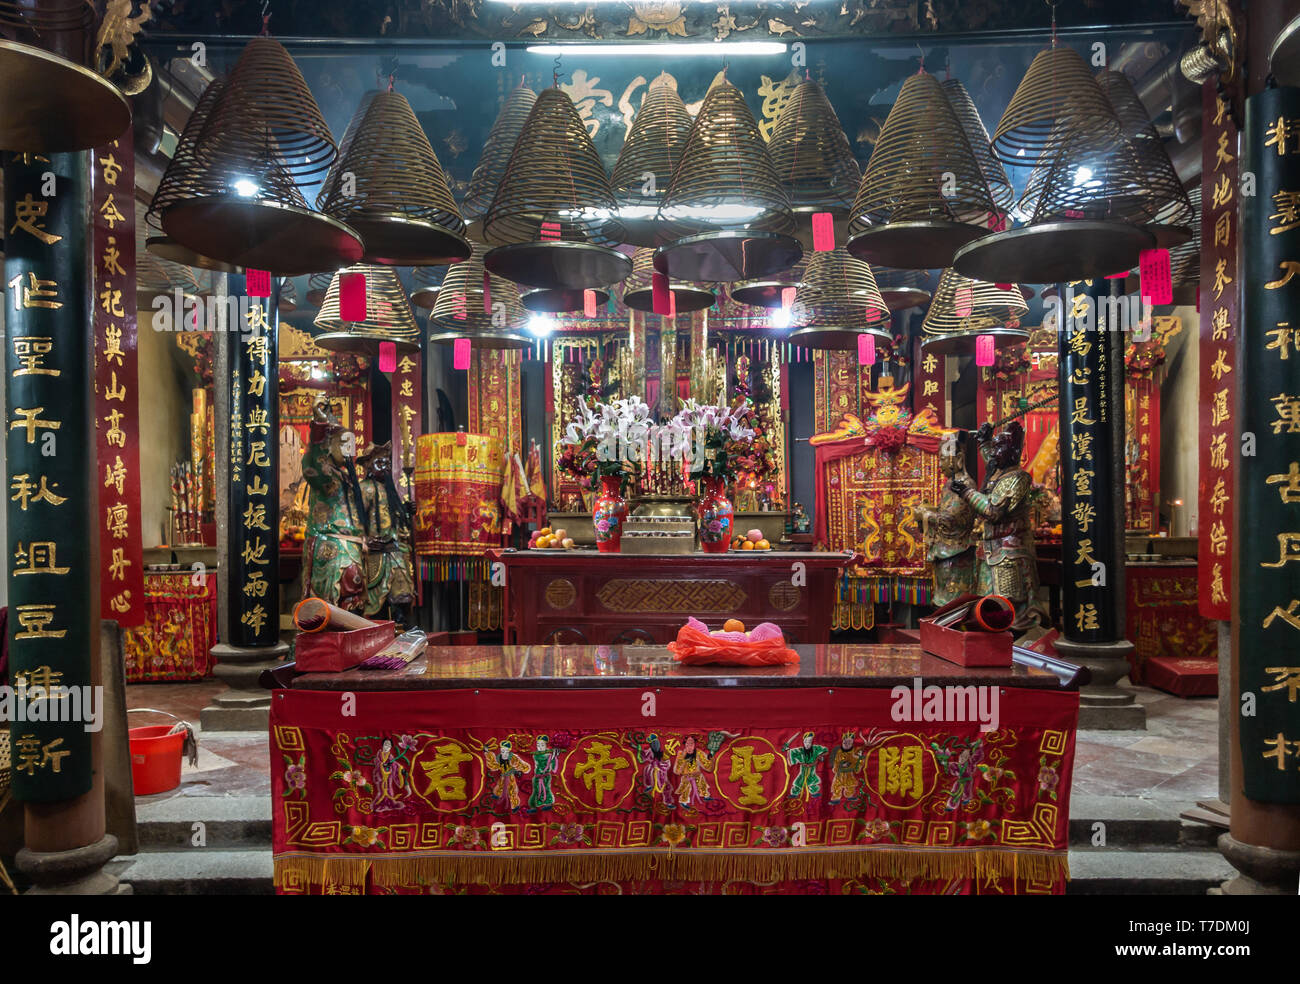 Hong Kong, Cina - 7 Marzo 2019: Tai O villaggio di pescatori. Sala principale di Kwan Tai tempio taoista con spirale incenso coni, luci, statue, altare, doni, Foto Stock